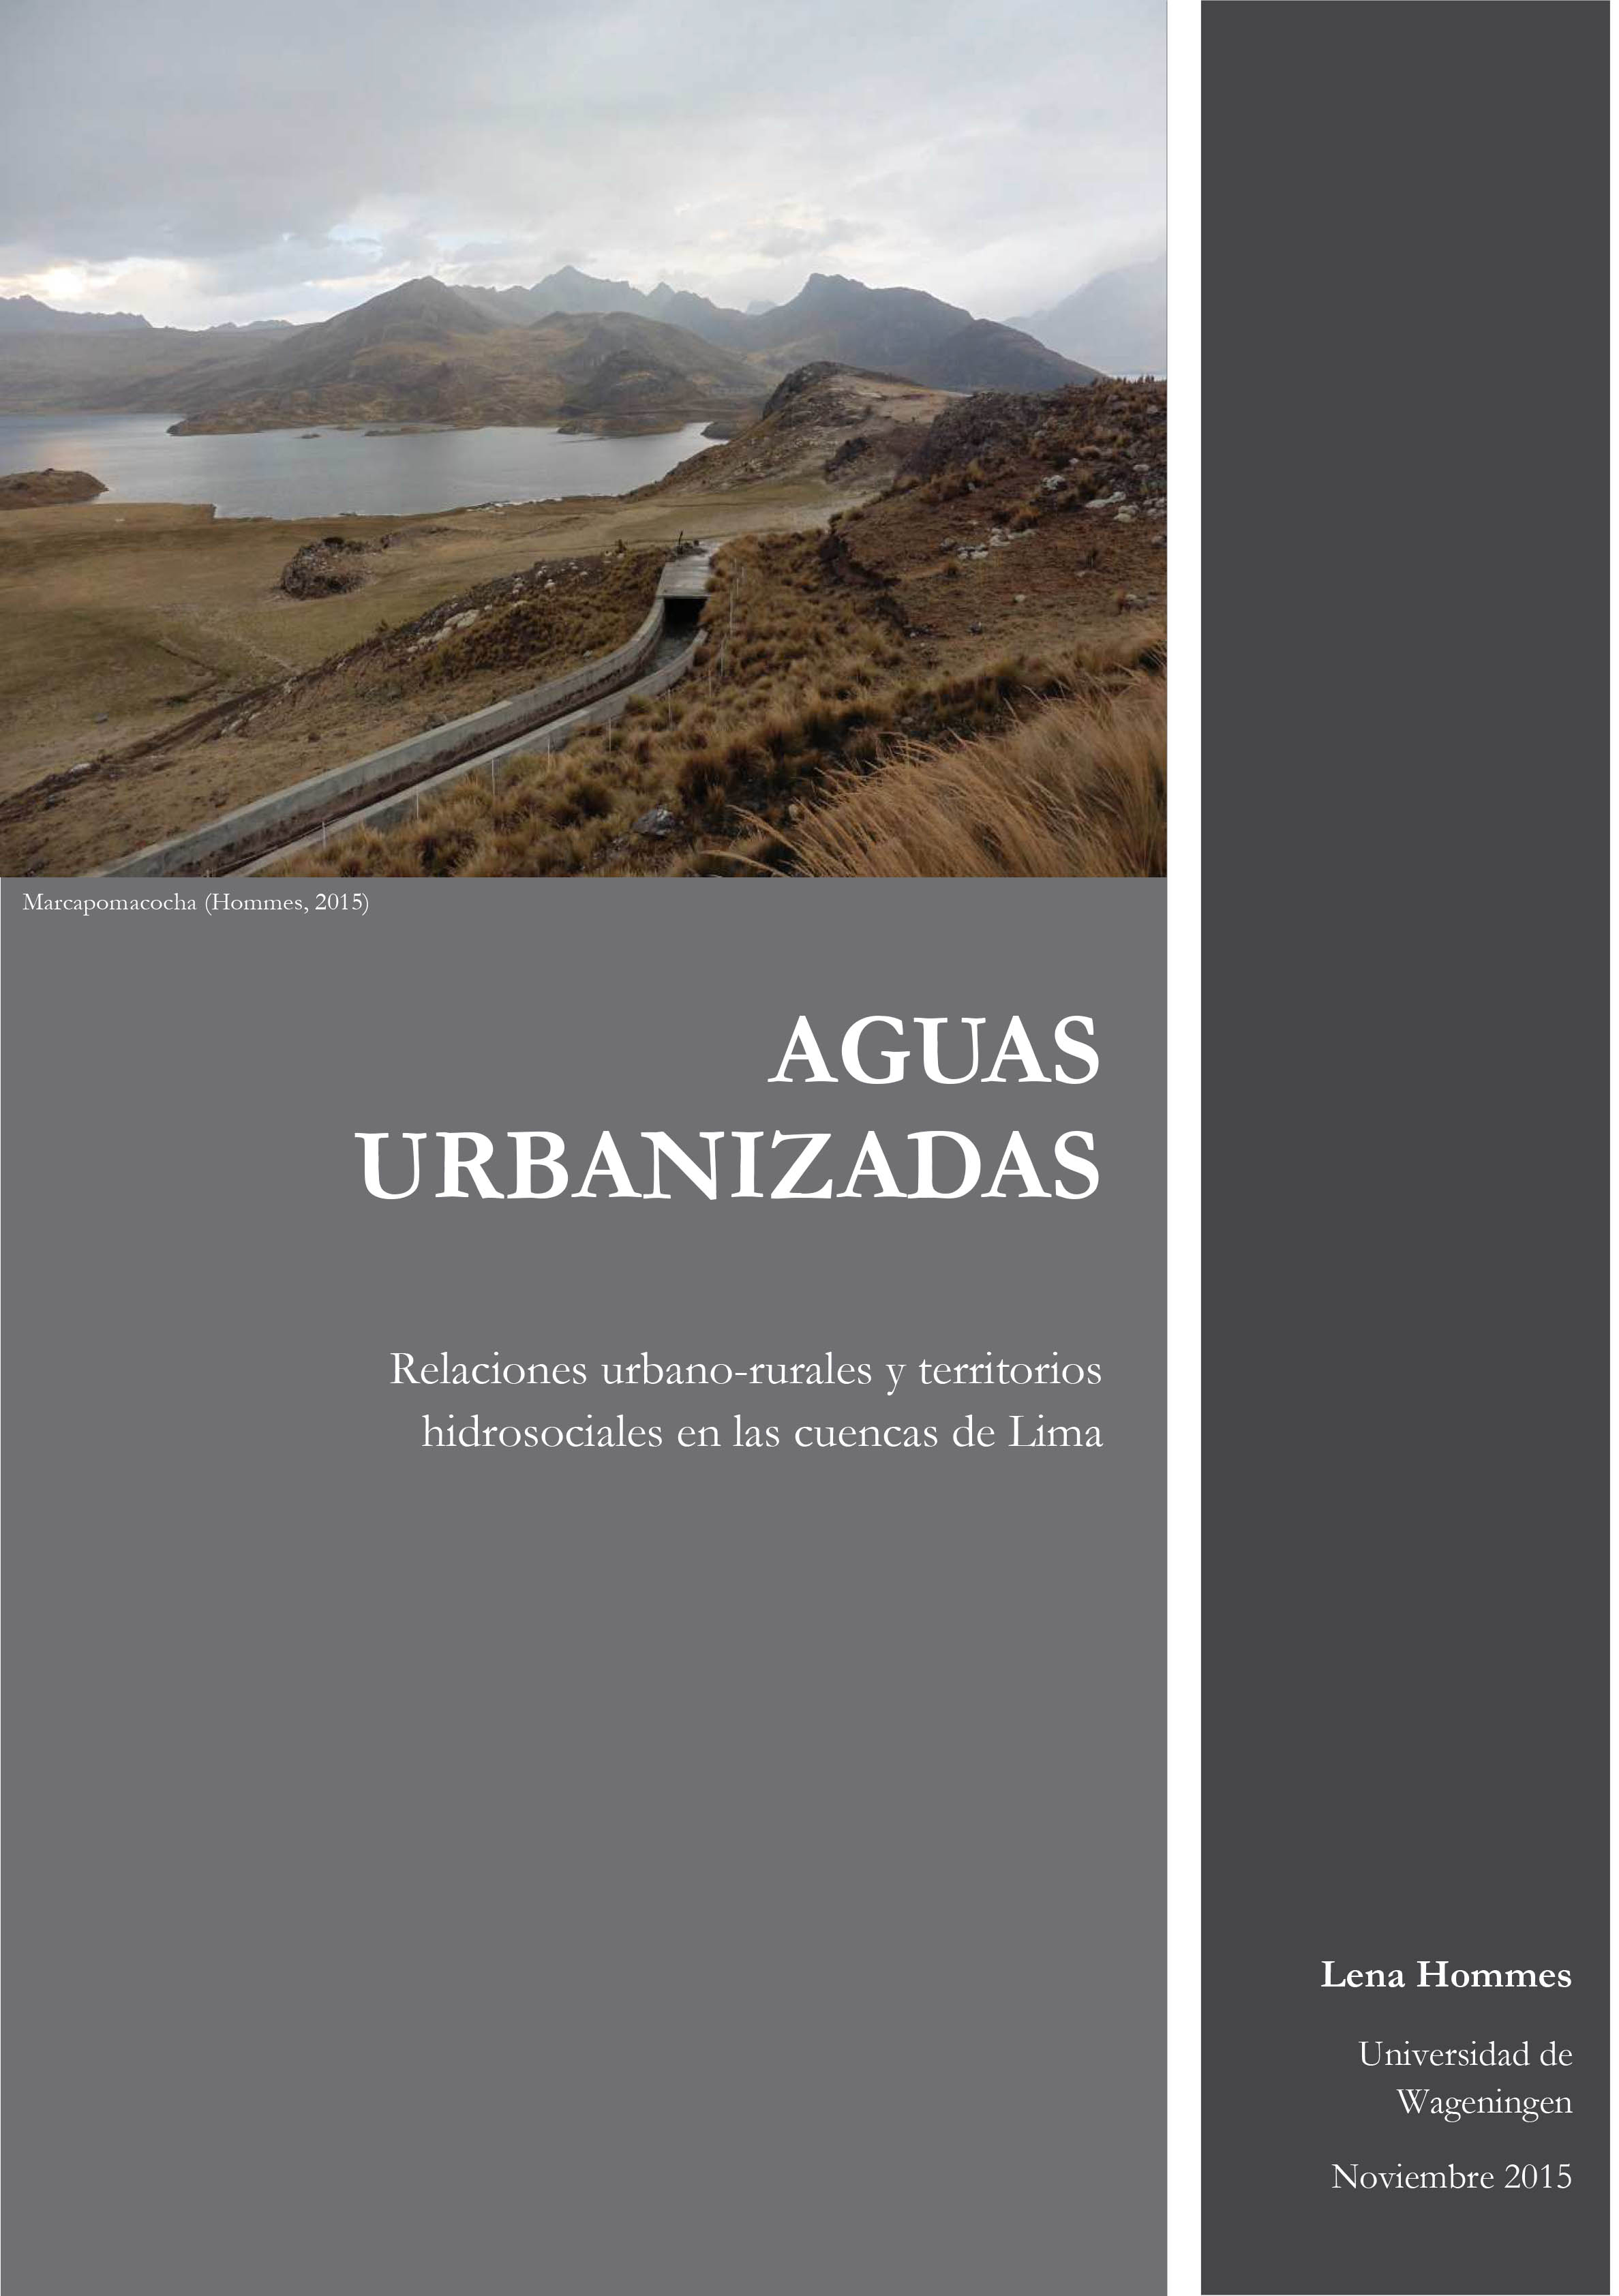 AGUAS URBANIZADAS: Relaciones urbano-rurales y territorios hidrosociales en las cuencas de Lima